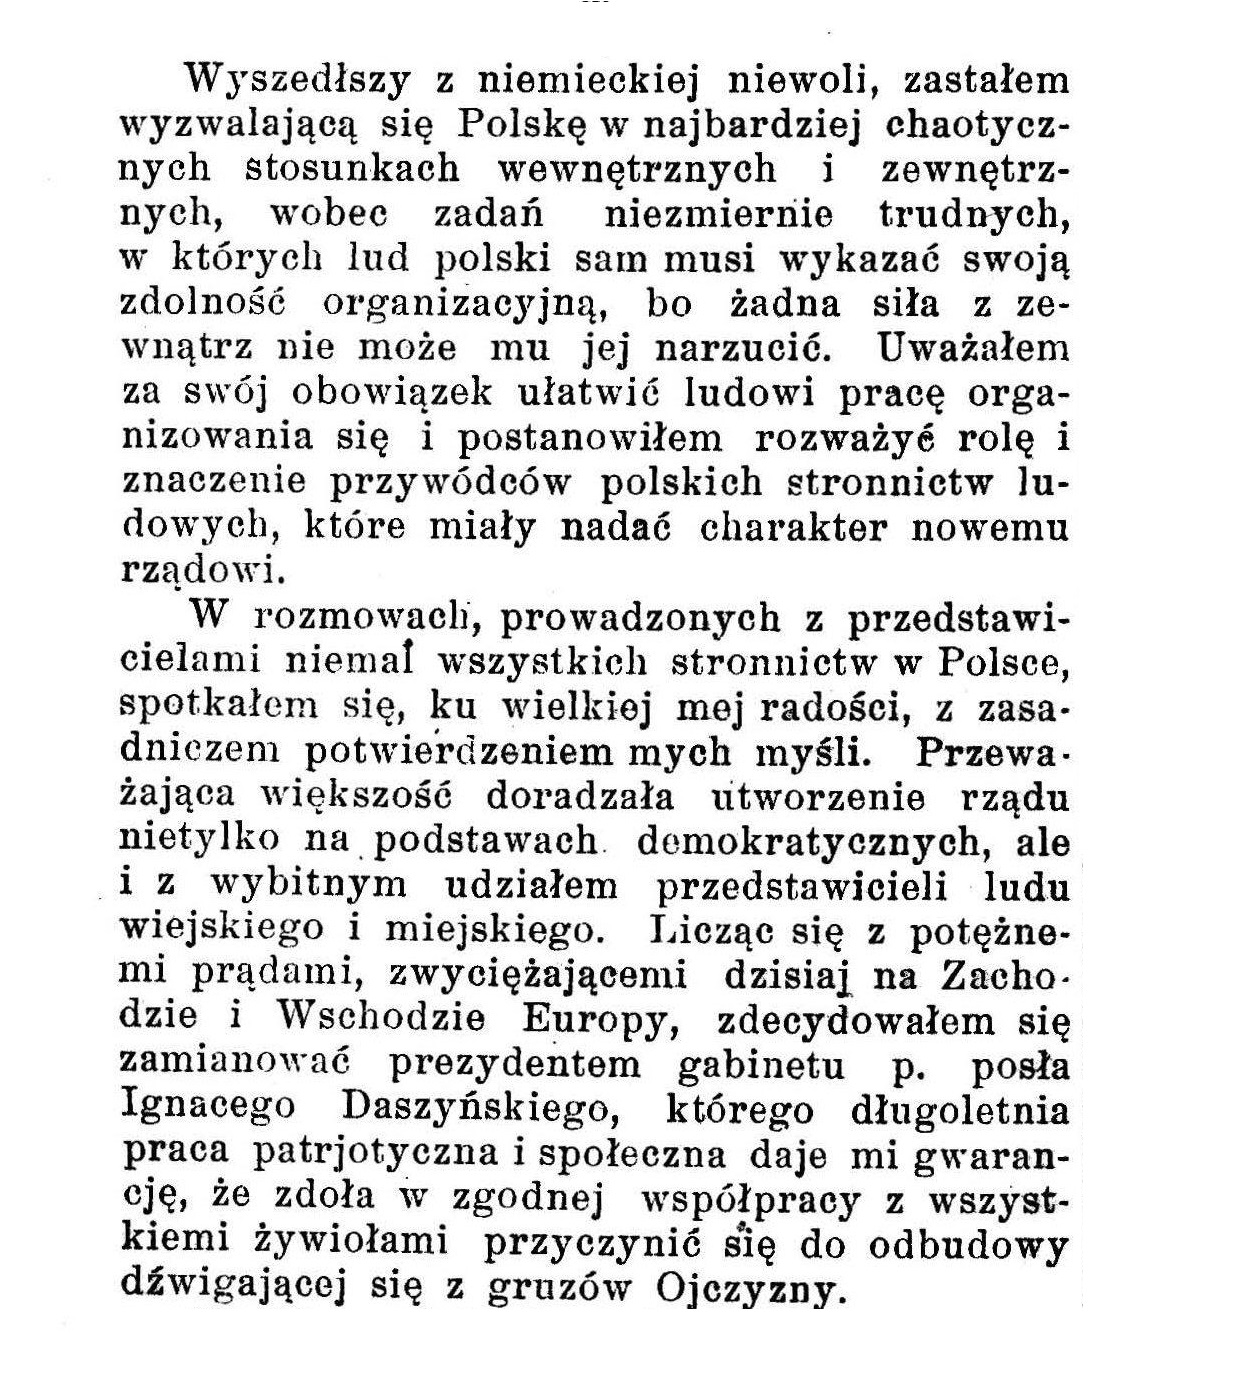 14 listopada 1918 roku.   Józef Piłsudski wyjaśnia czemu na stanowisku premiera Polski widzi Ignacego Daszyńskiego